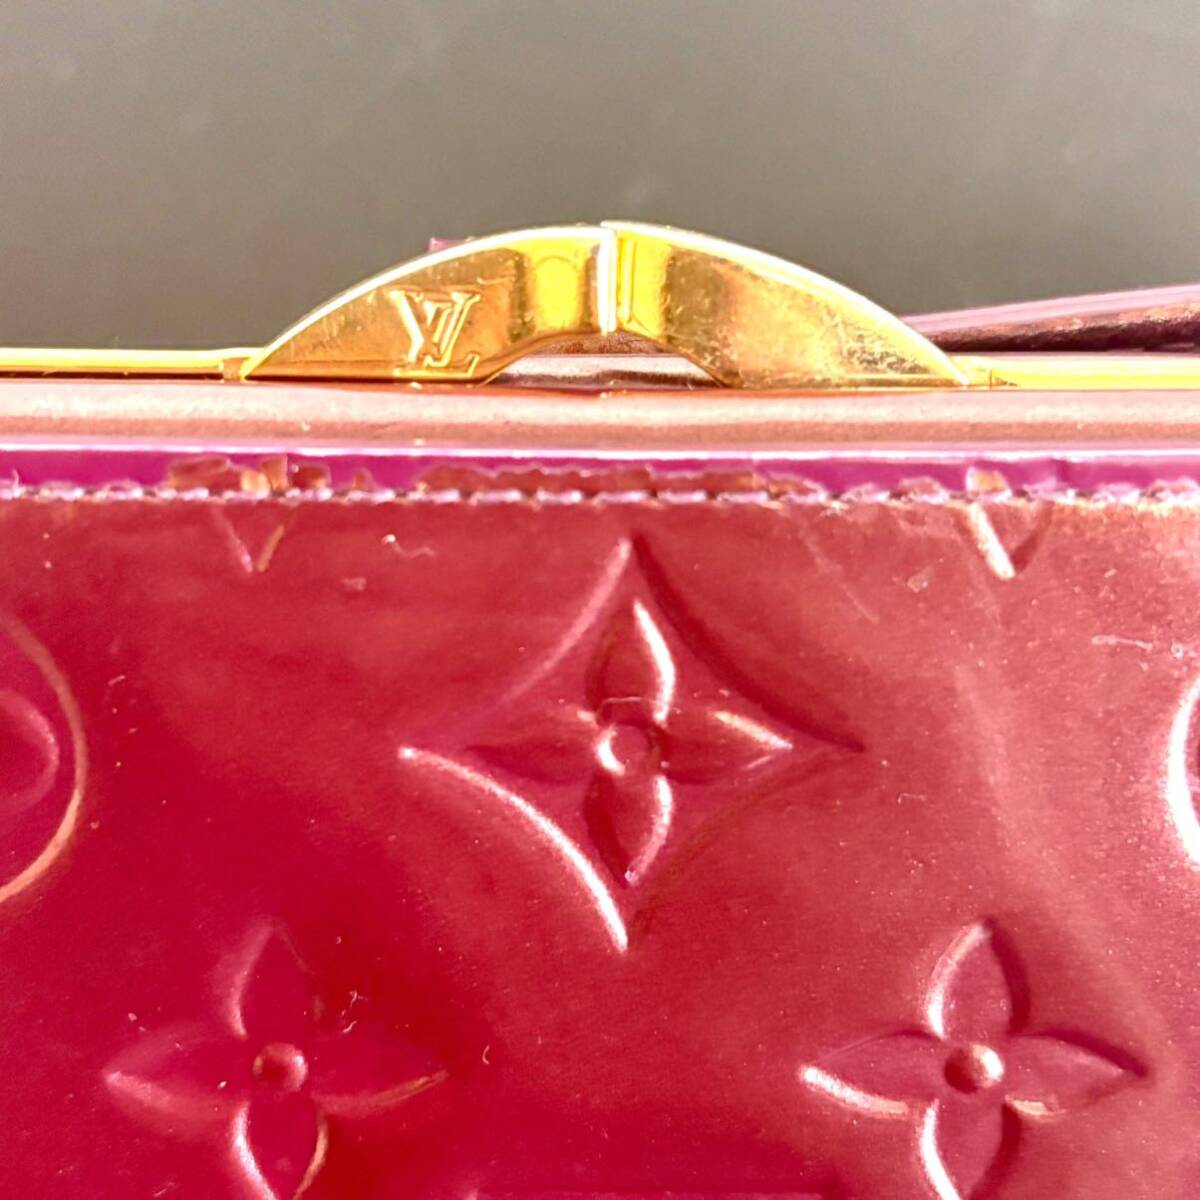 ec321. кошелек бумажник чехол для ключей продажа комплектом 2 . бумажник кошелек для мелочи . ячейка для монет модный высота видно модные аксессуары красный монограмма способ 